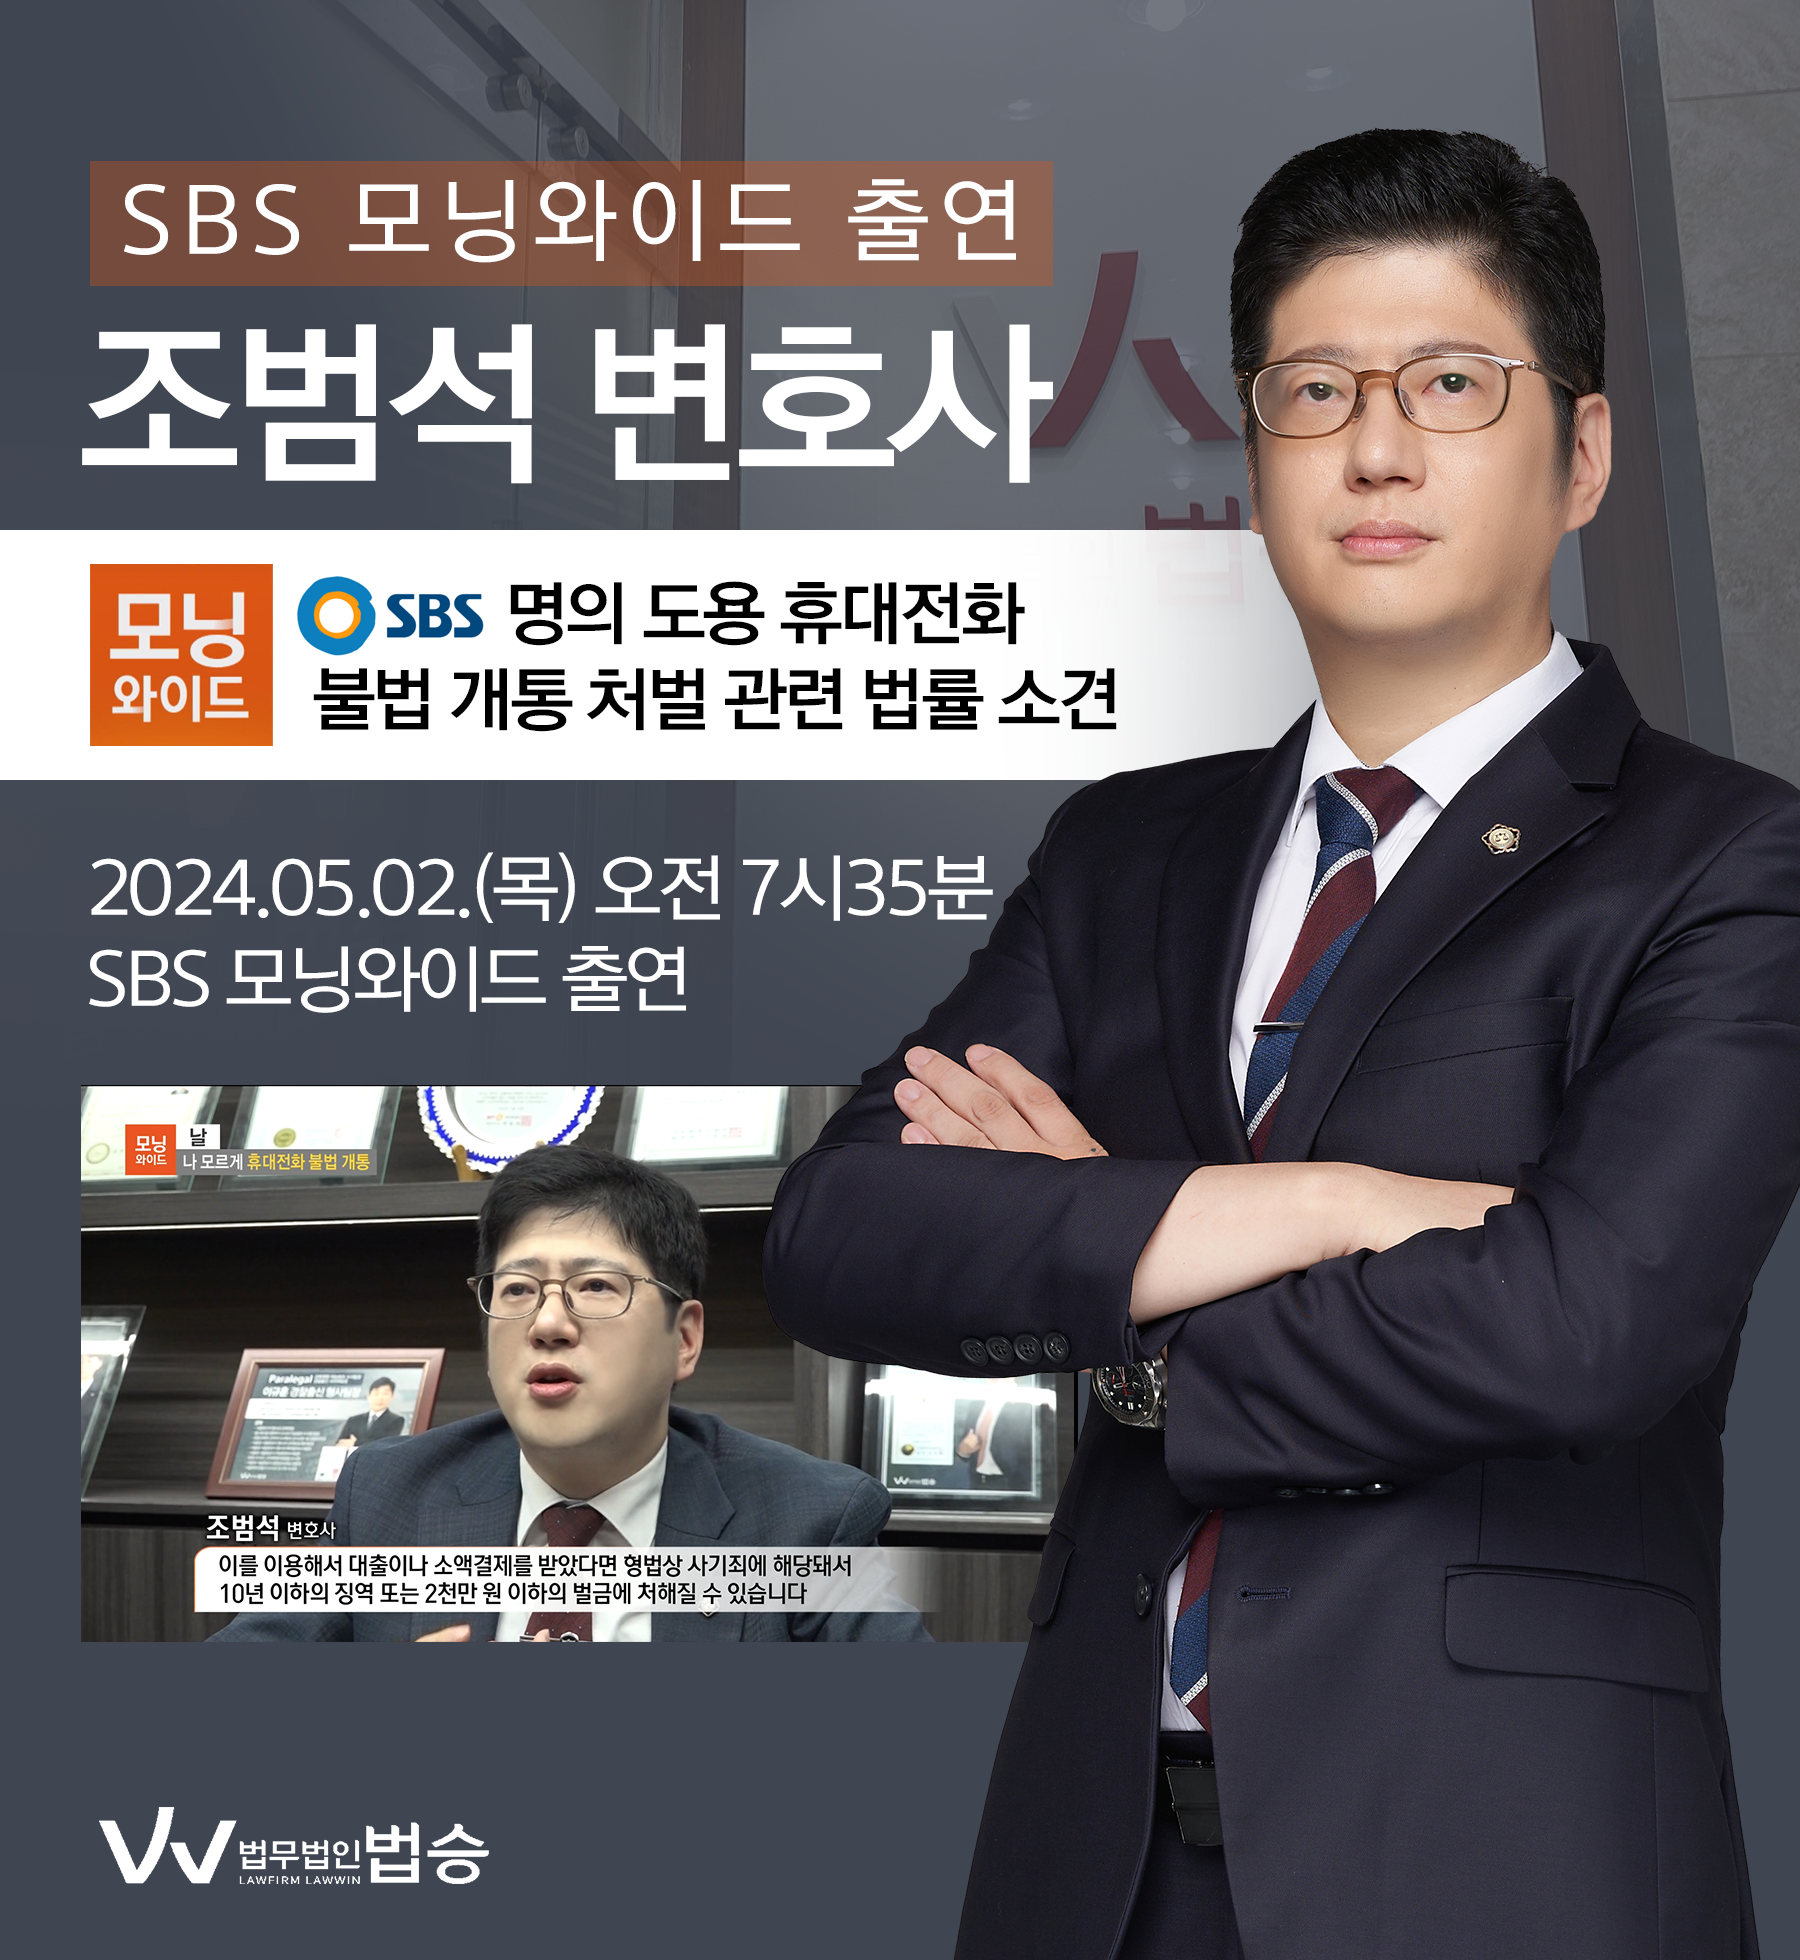 [법승소식] 조범석 변호사 SBS 모닝와이드 [날] 방송 출연ㅣ나 모르게 휴대전화 불법 개통 이미지